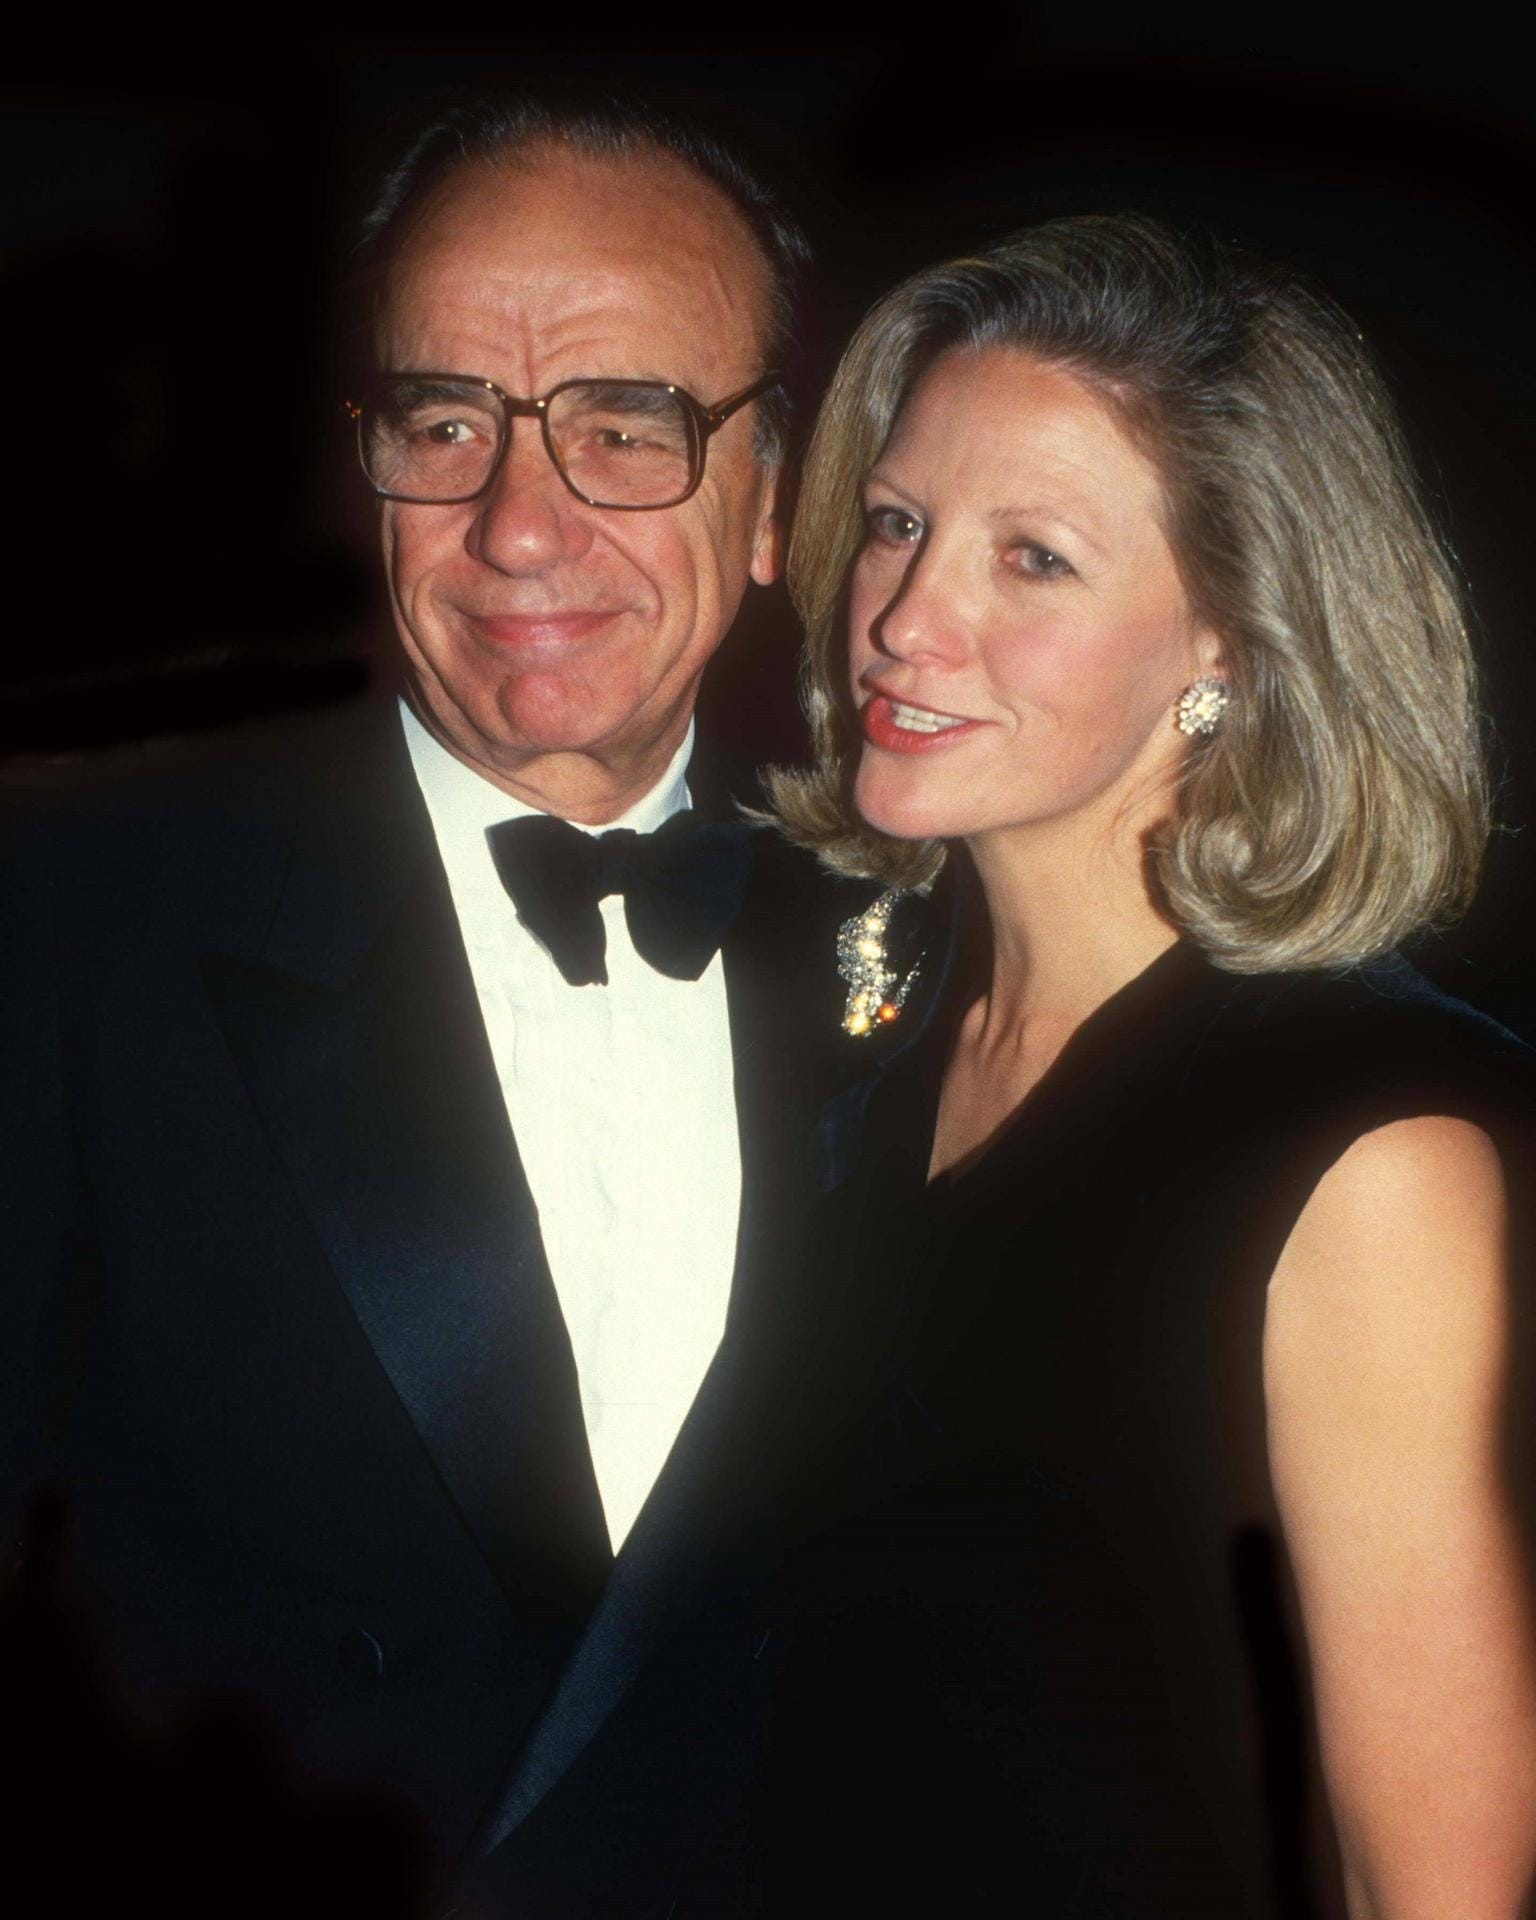 Rupert und Anna Murdoch: Es war eine Scheidung ohne großen Rosenkrieg. Der Medienunternehmer und seine Frau einigten sich damals auf eine Zahlung von 1,48 Milliarden Euro. Nur 17 Tage nach der Scheidung heiratete Murdoch erneut.